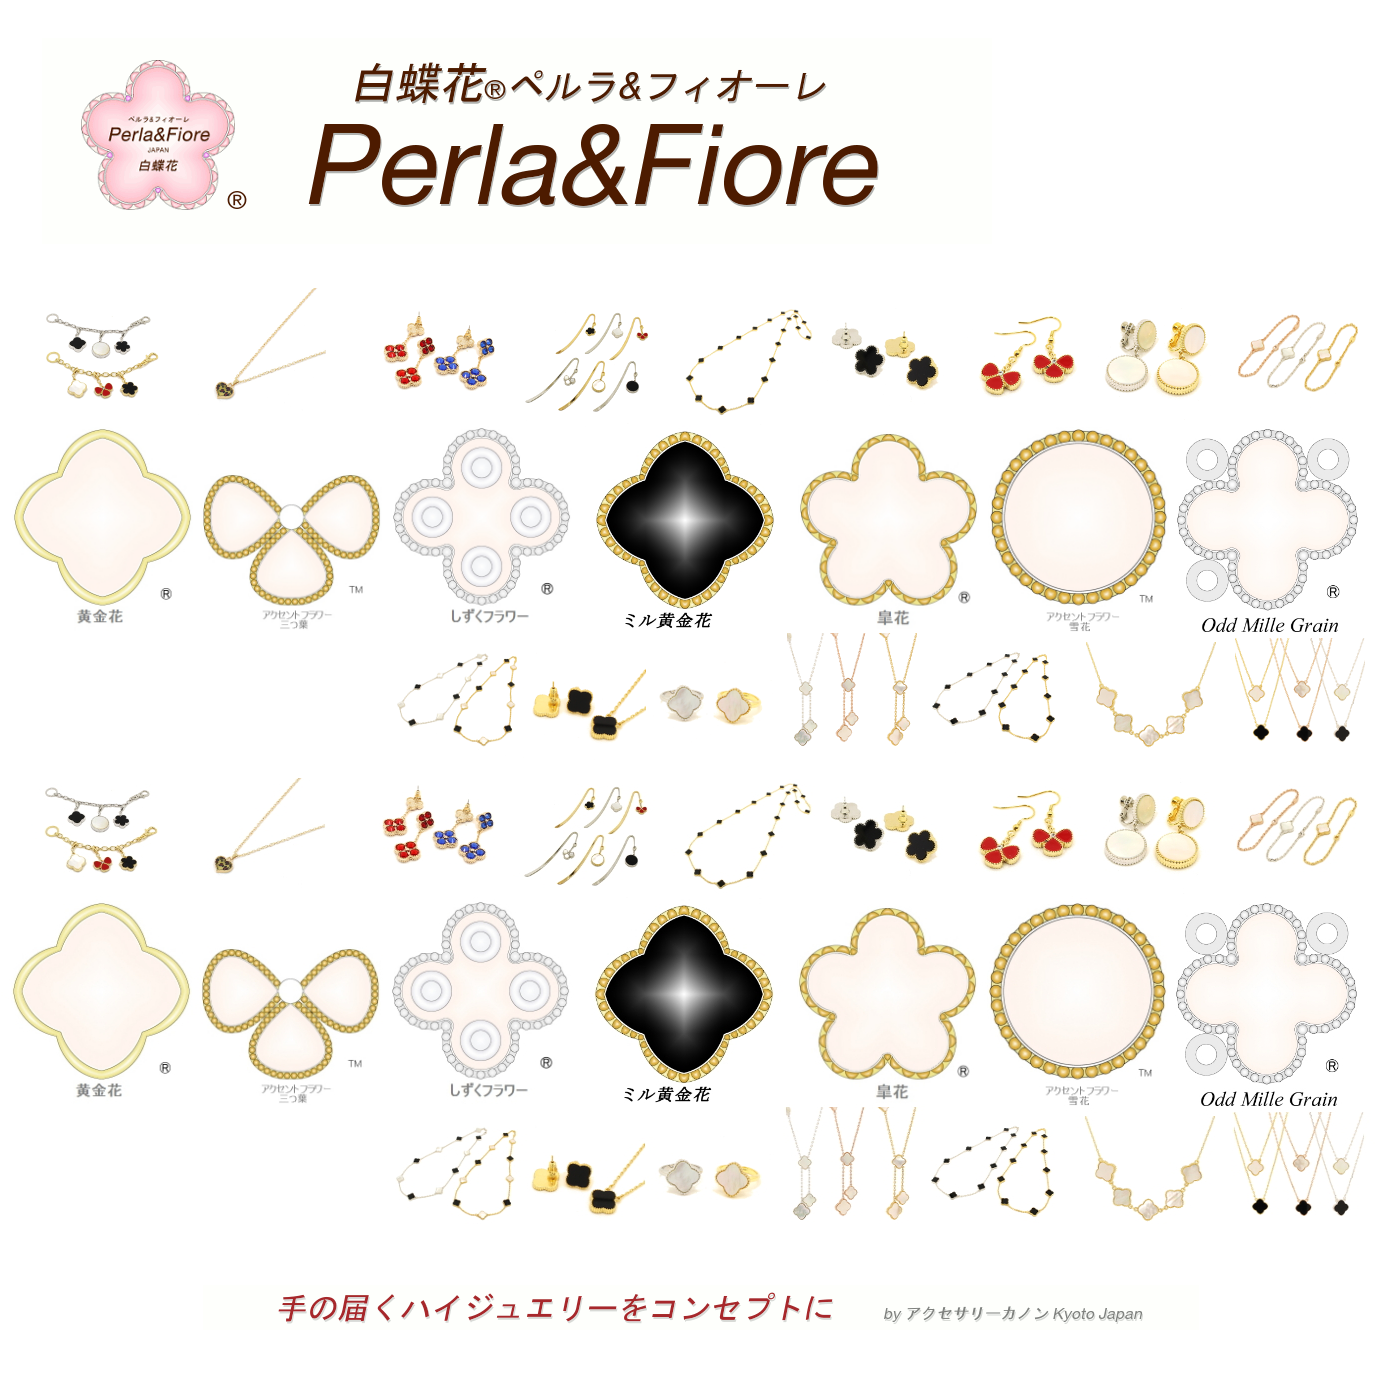 白蝶花Perla&Fiore 公式HPへようこそ - 白蝶花 Perla&Fiore